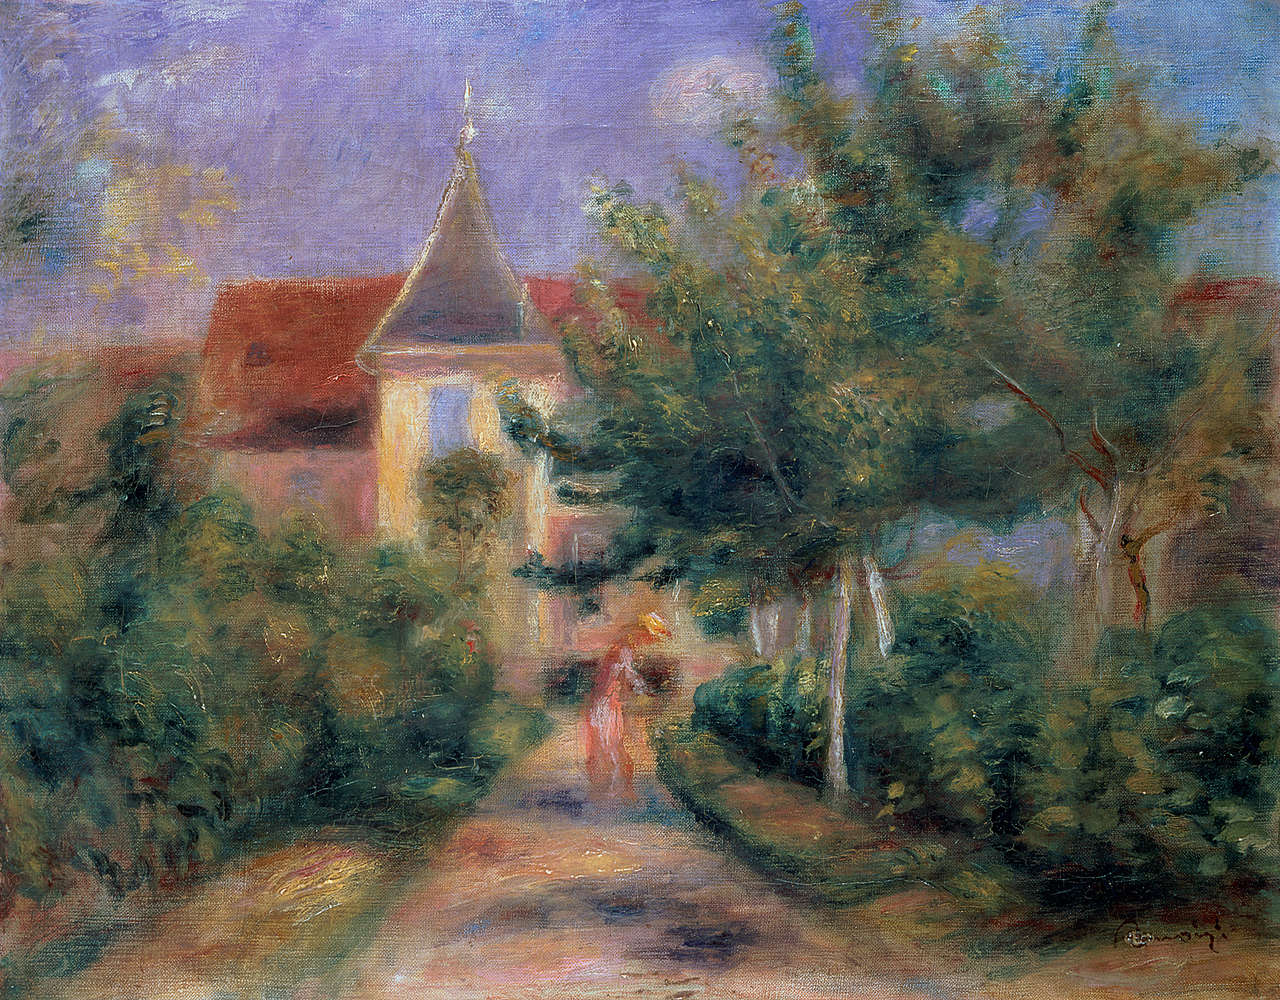             Fototapete "Renoirs Haus in Essoyes" von Pierre Auguste Renoir
        